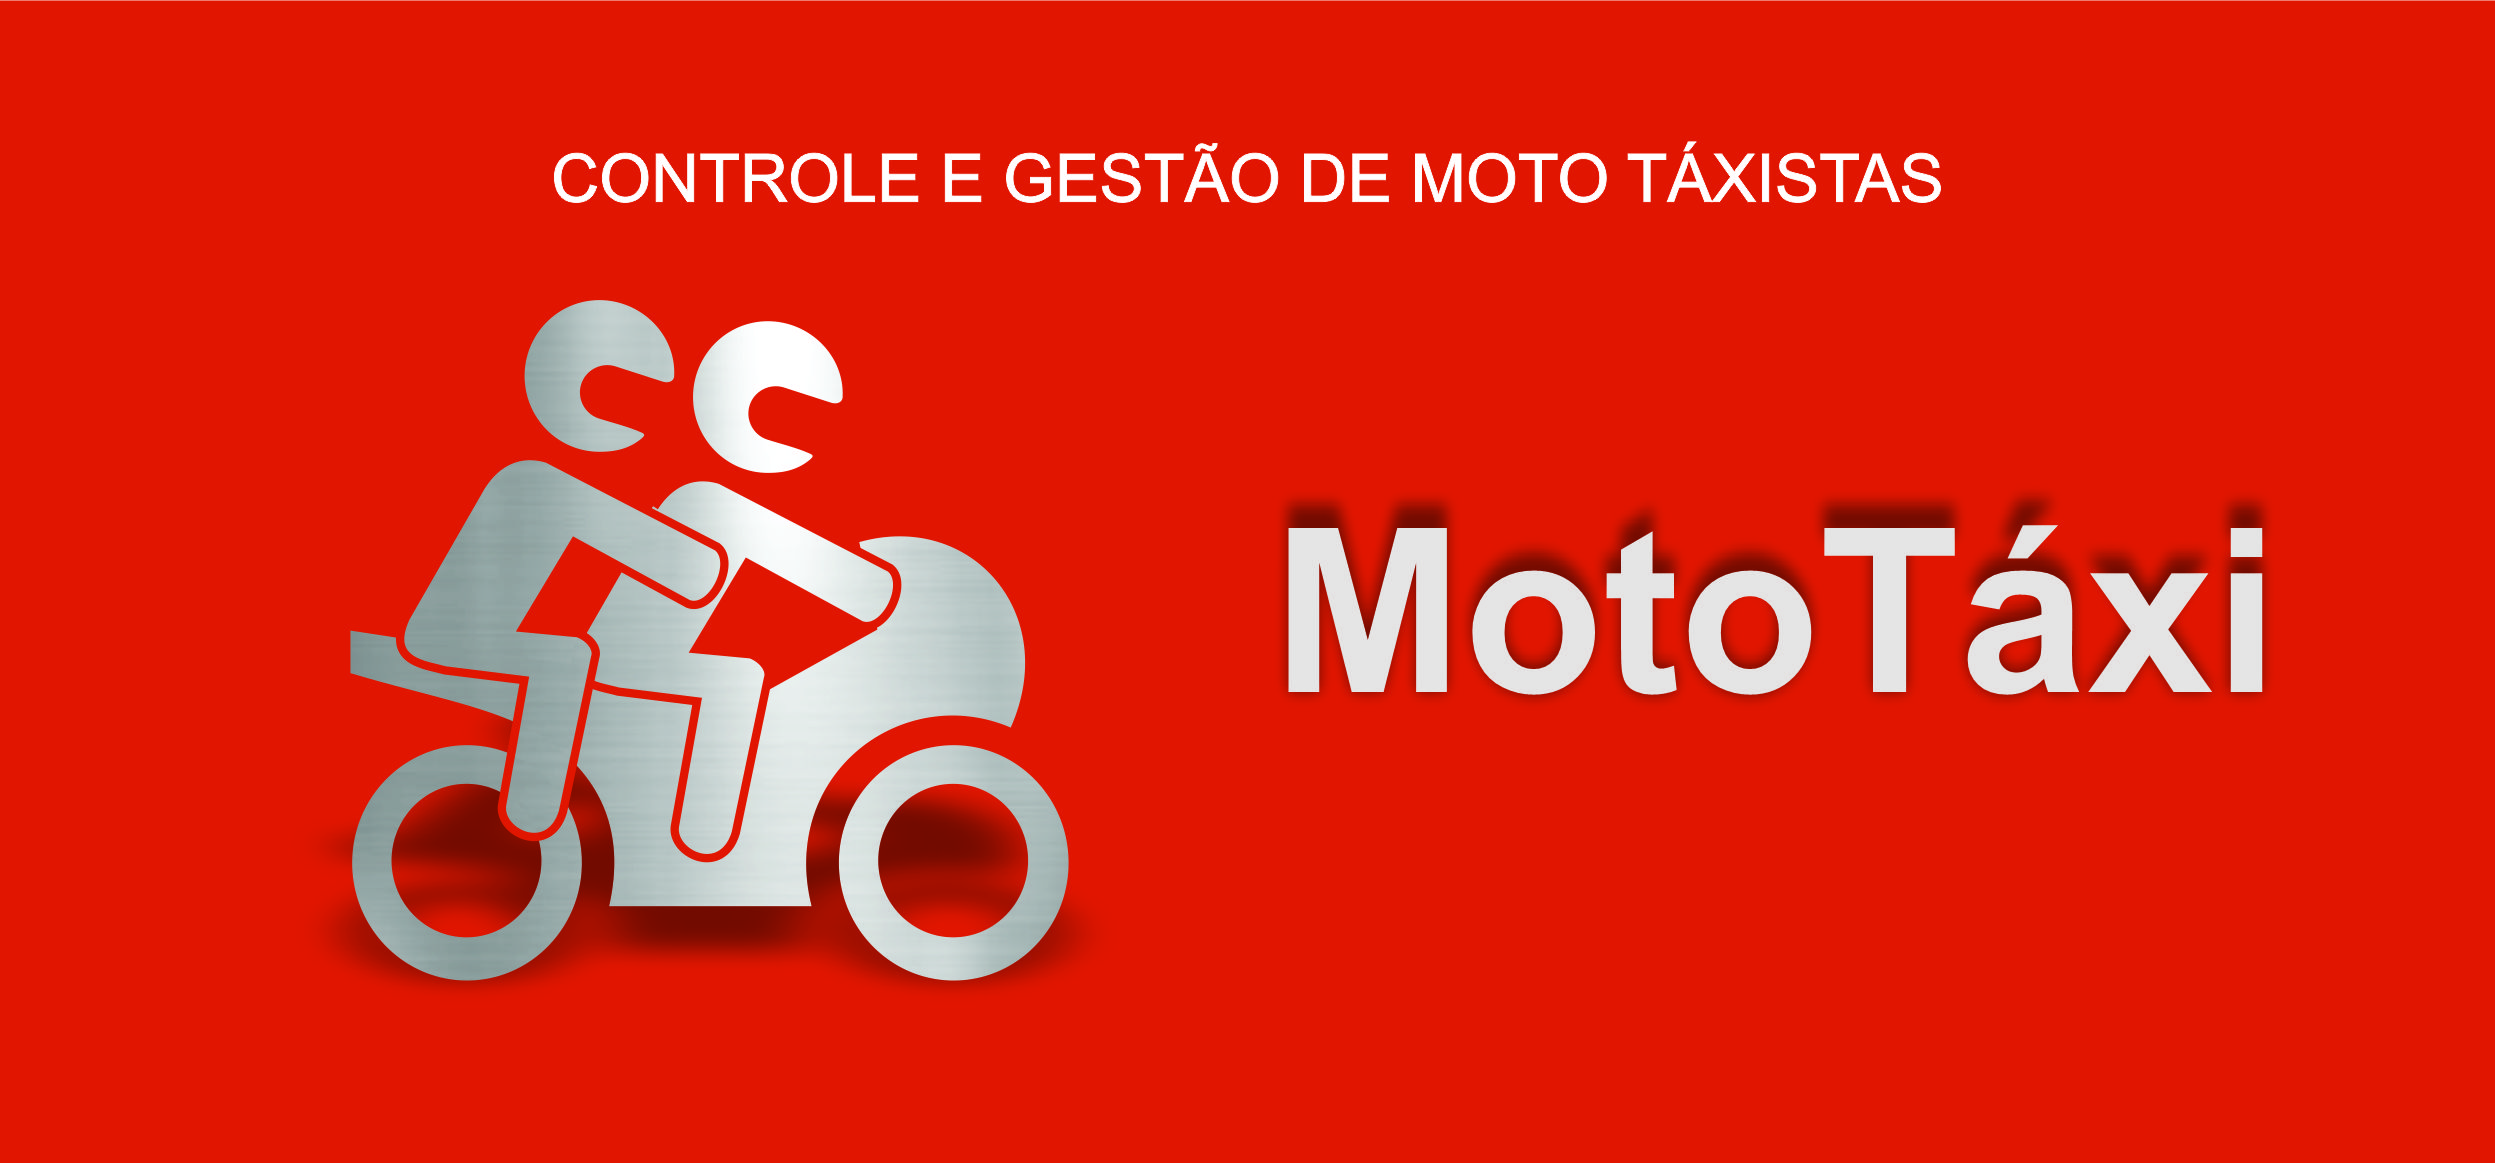 Sistema de Moto-Táxi